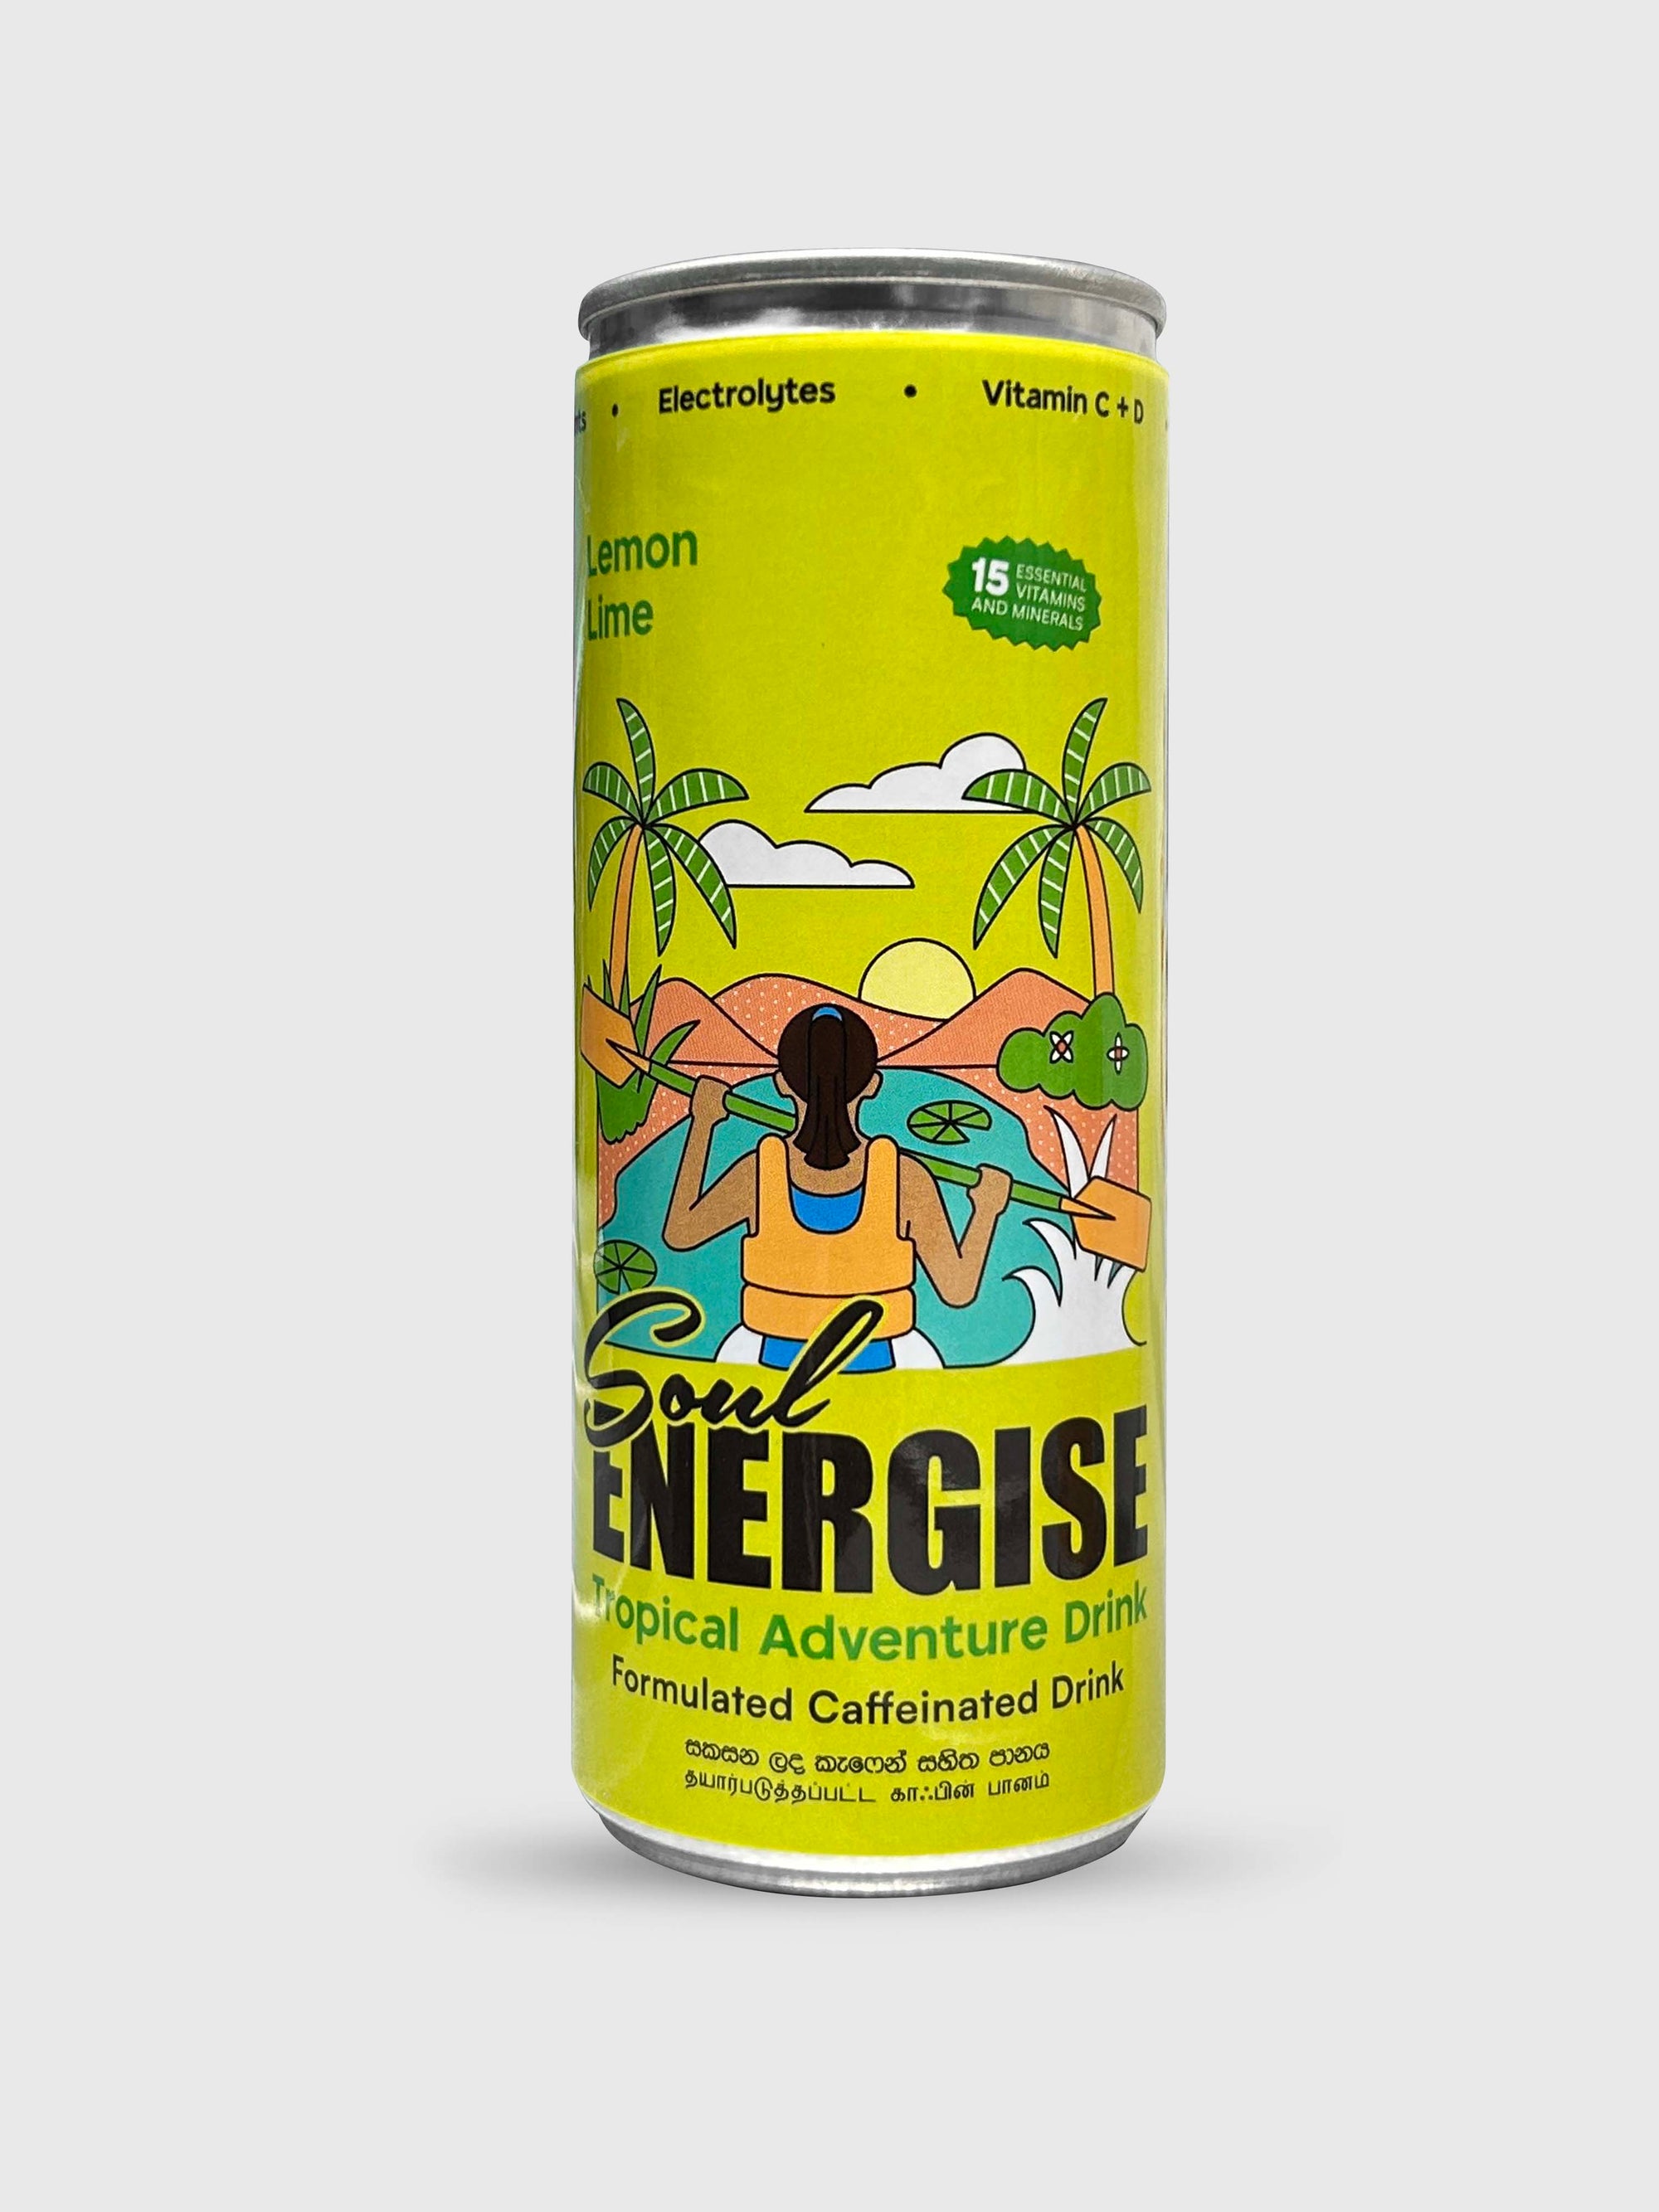 Soul Energise - Lemon Lime Flavour